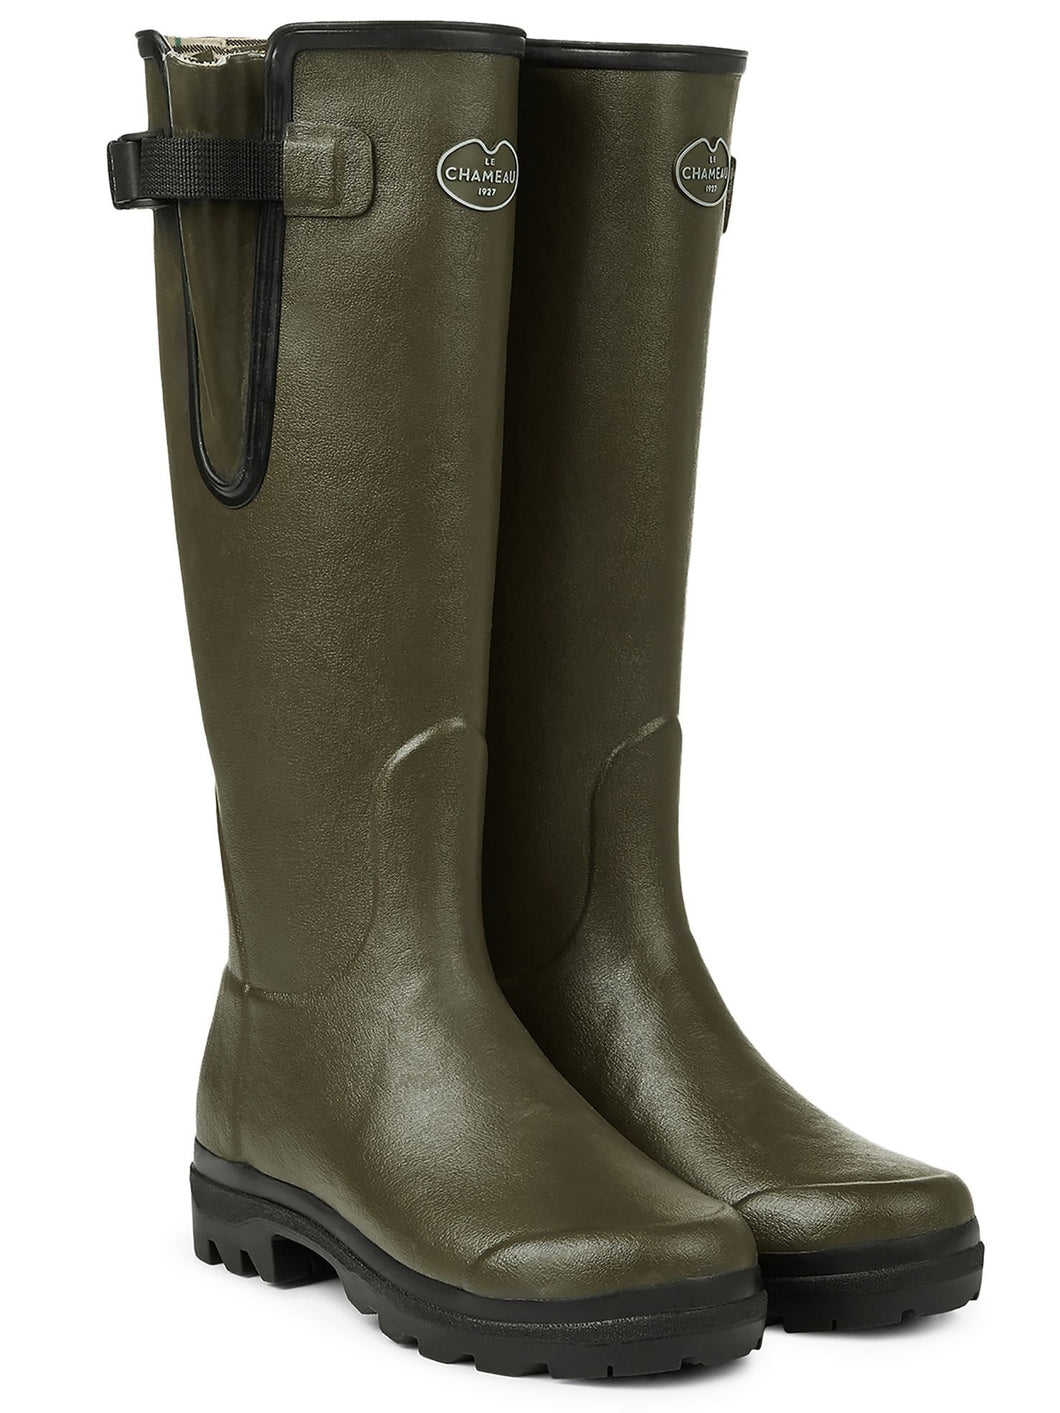 LE CHAMEAU Vierzon Boots - Ladies Jersey Lined - Vert Chameau